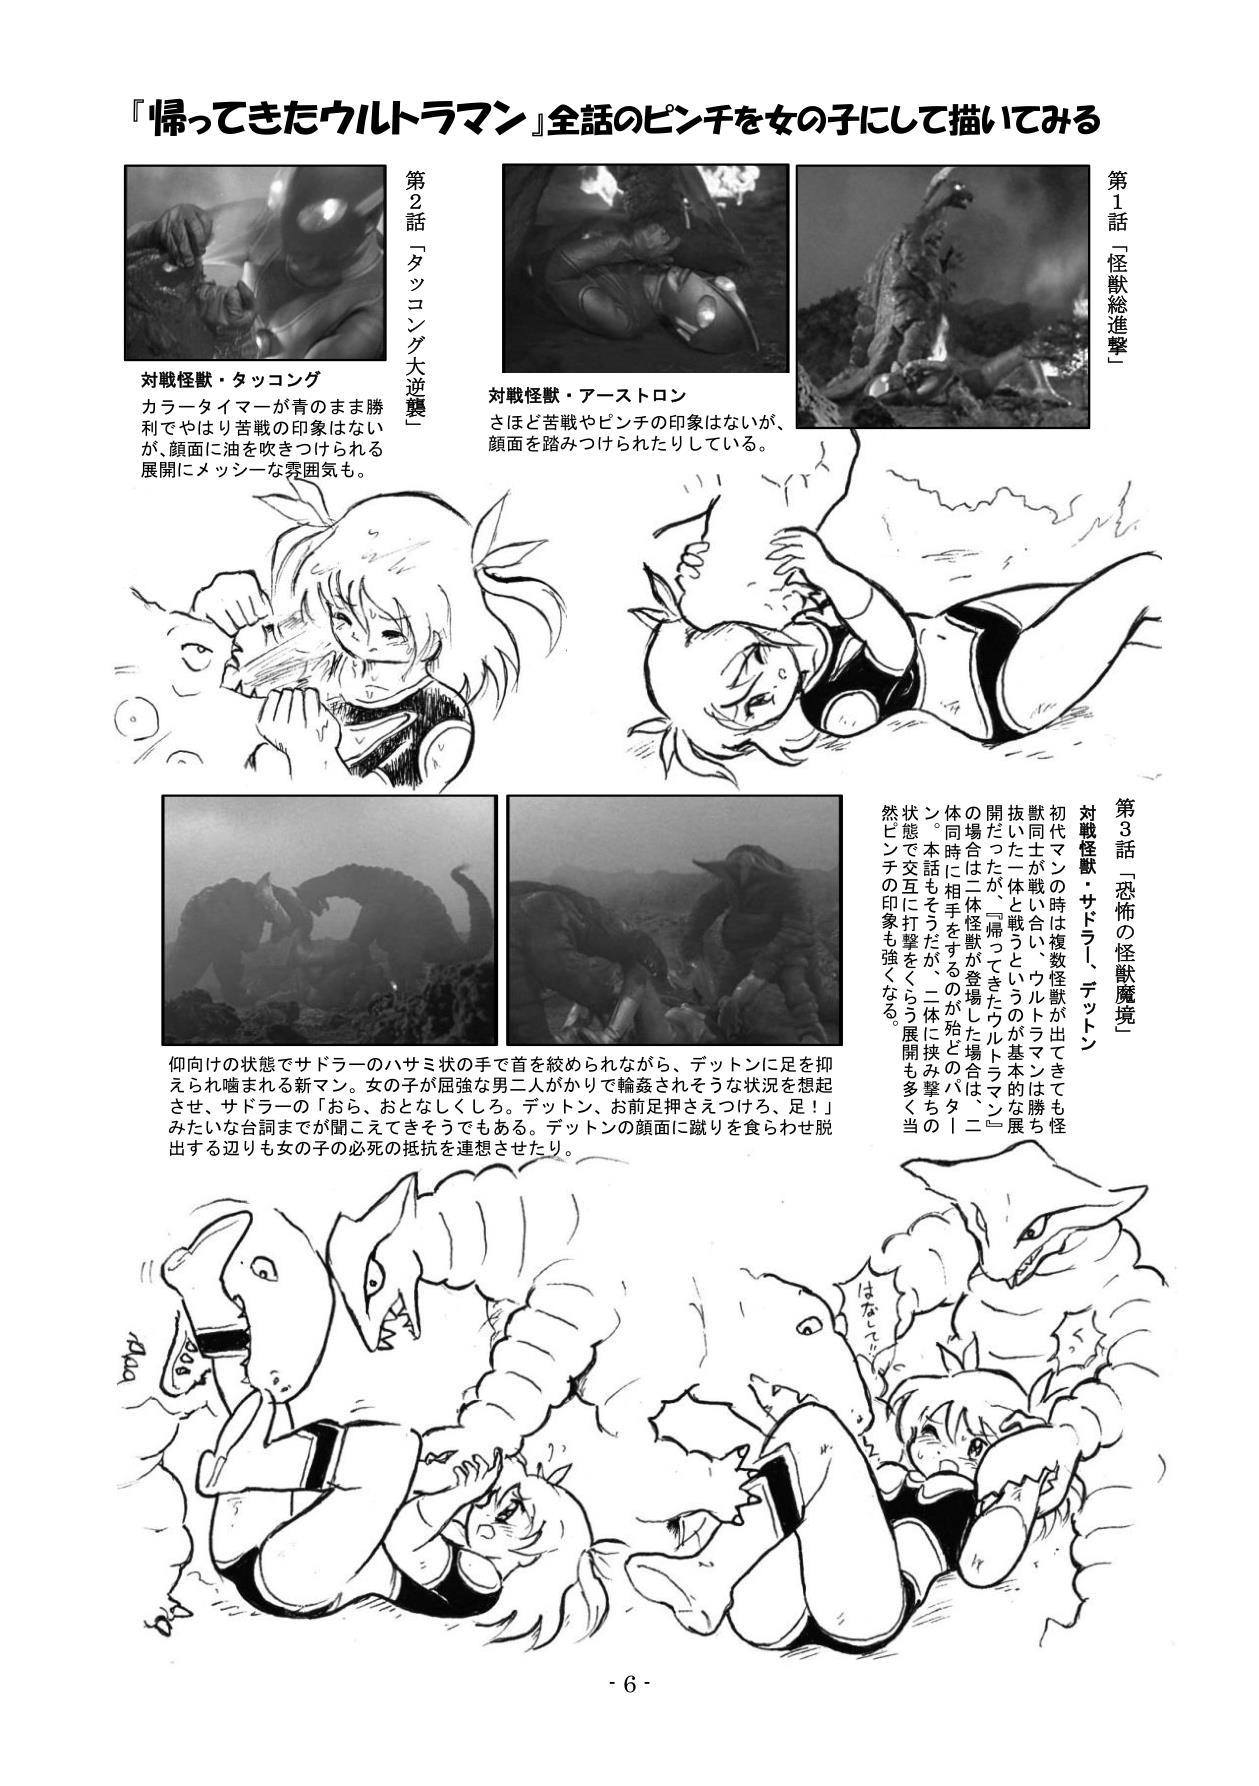 Girlsfucking Kaettekita Ultraman Musume Dai Pinch - Ultraman Real Amateur Porn - Page 5